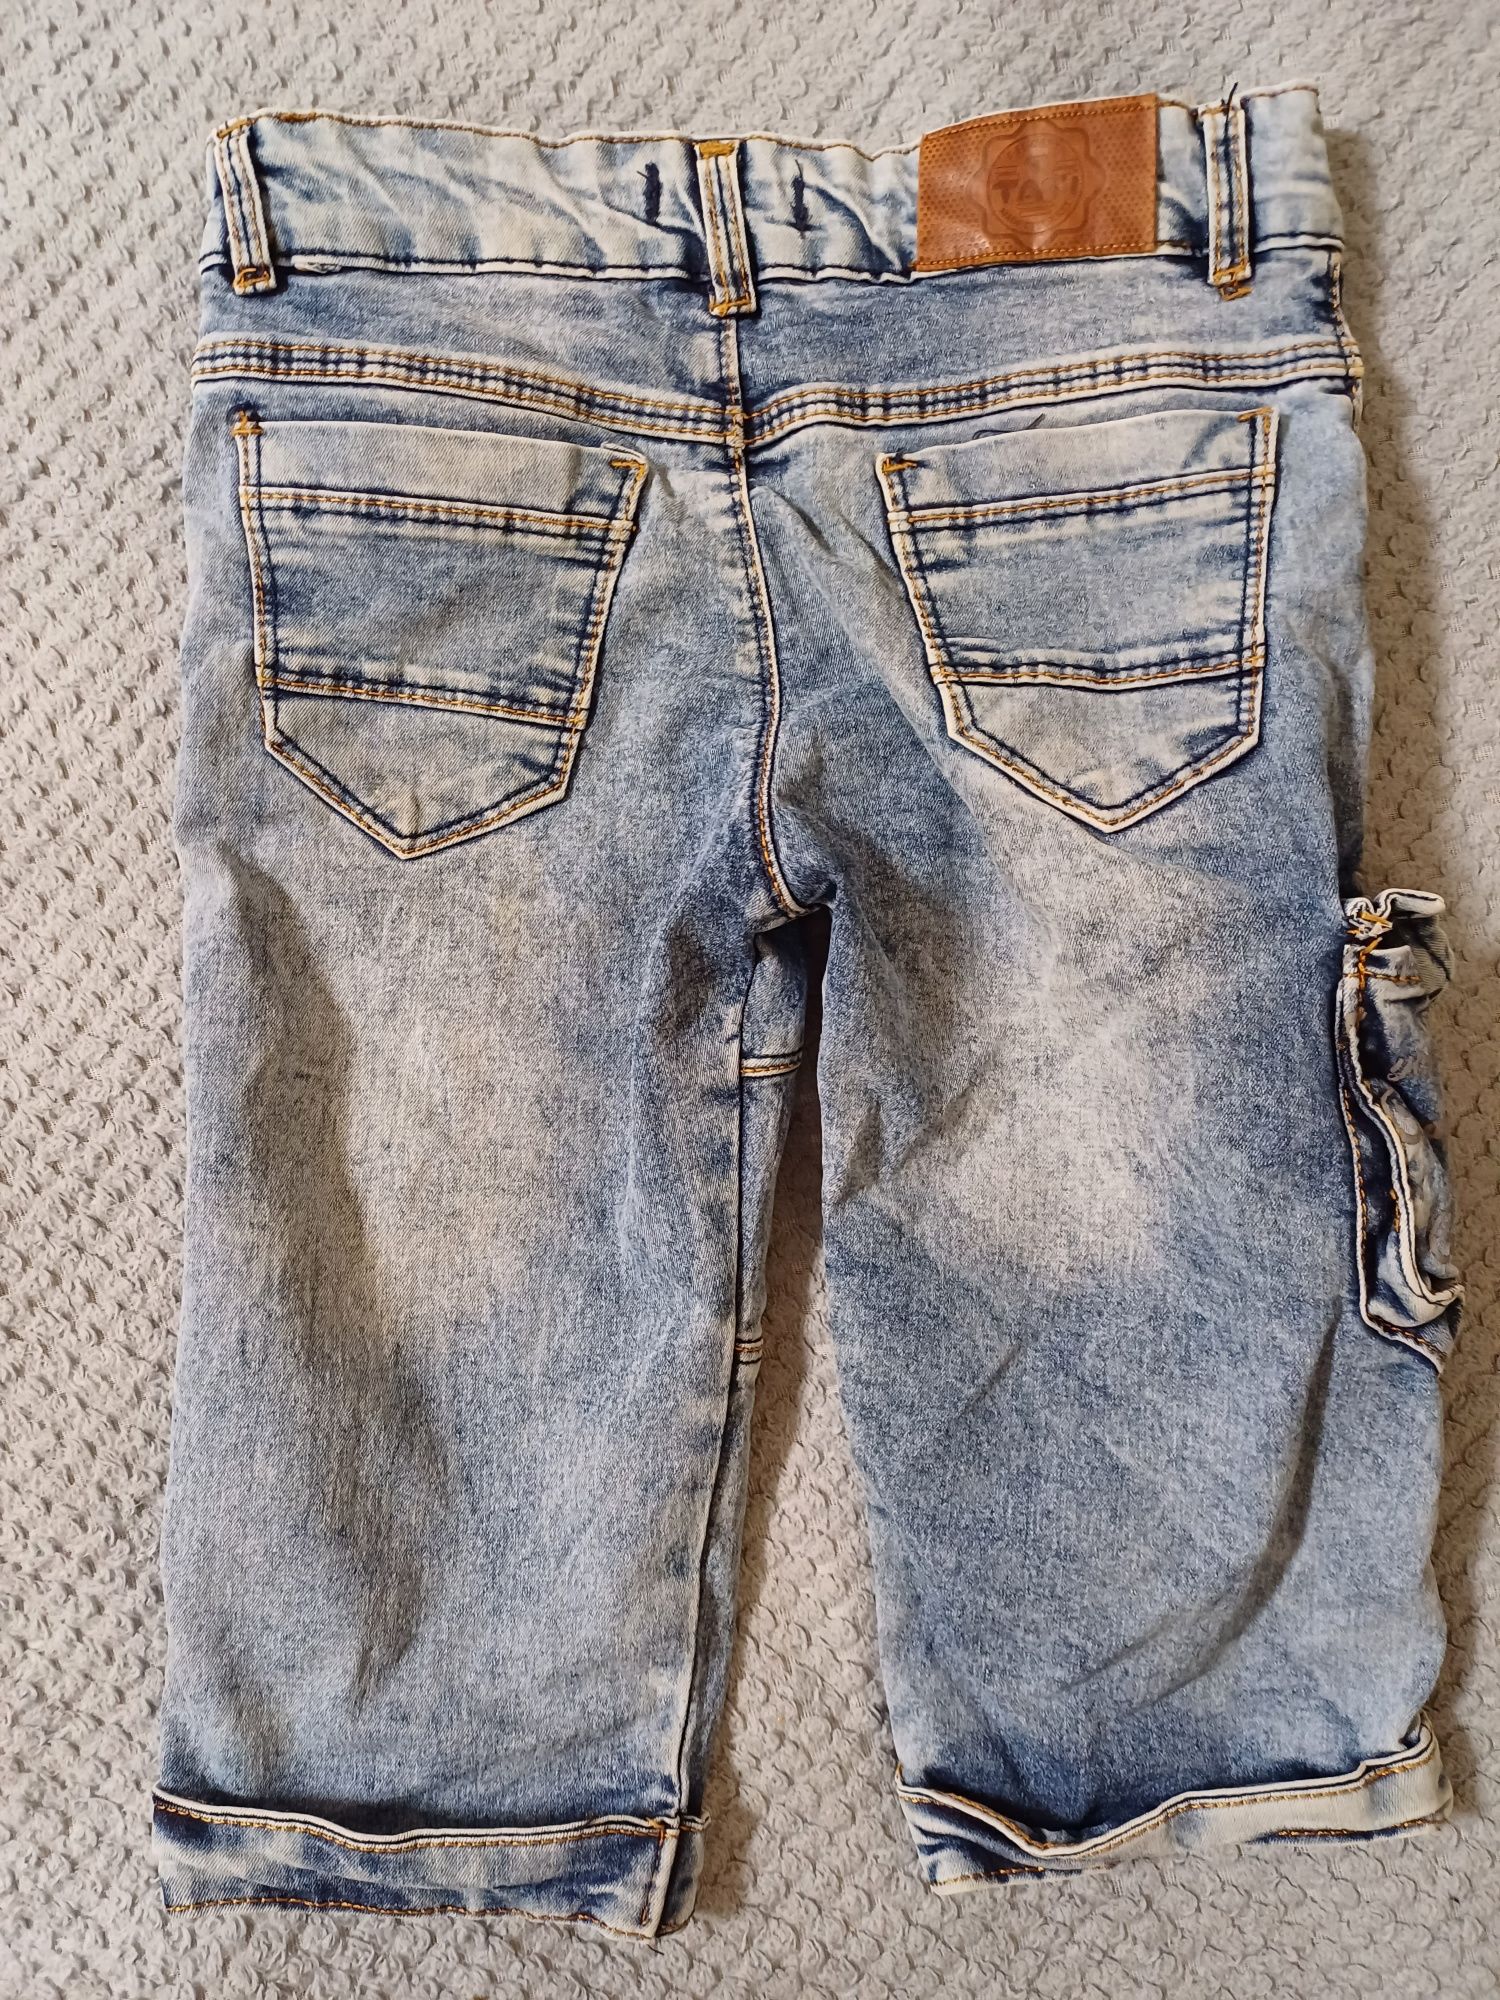 Шорты джинсовые на мальчика 10-11 лет.